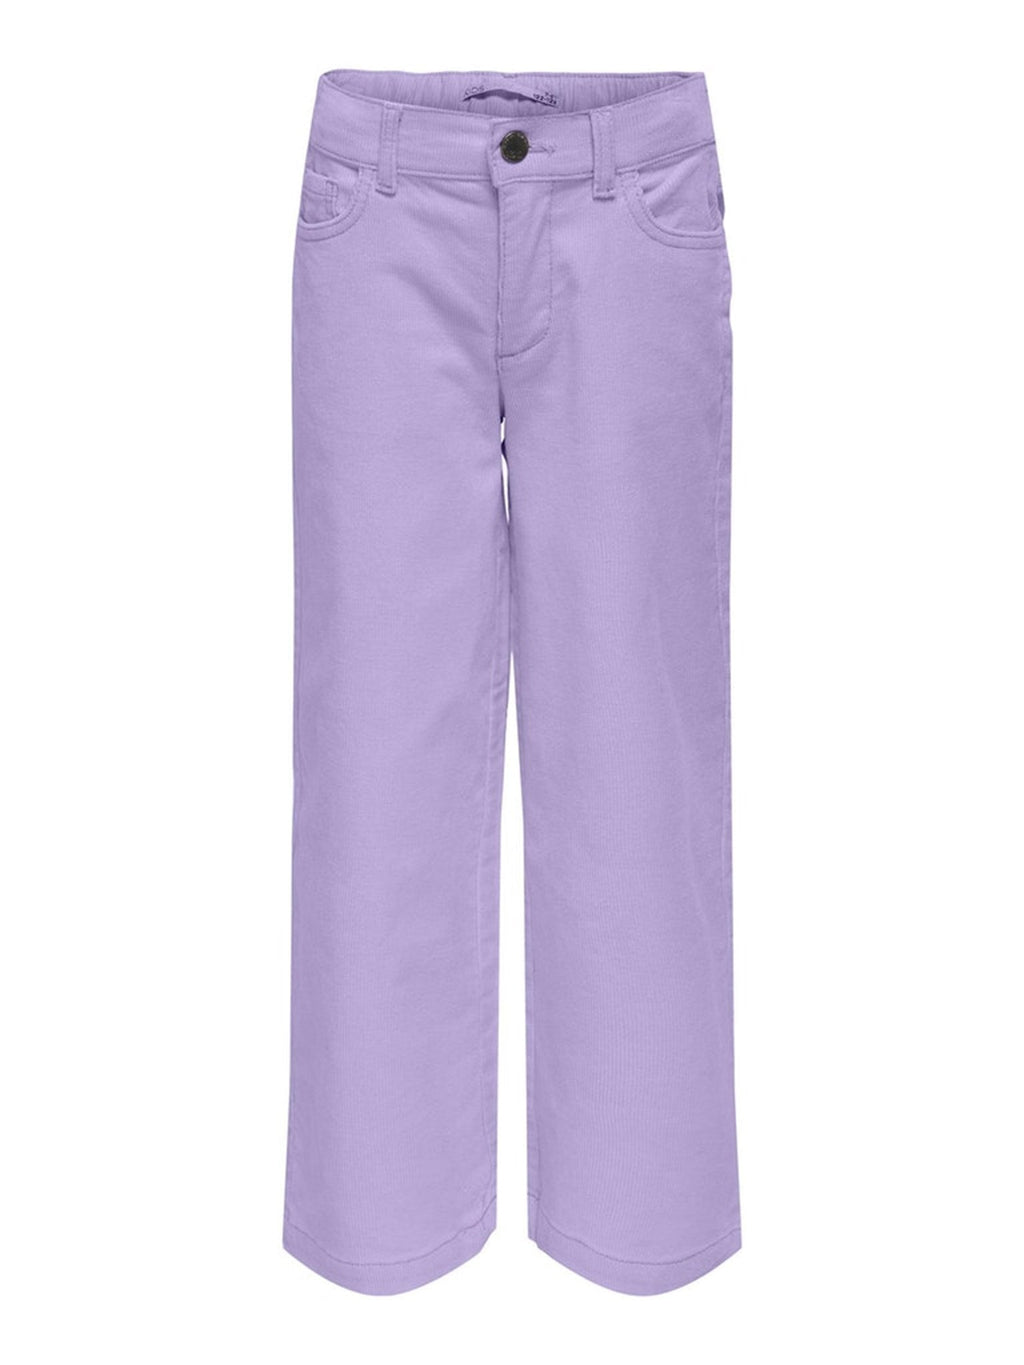 Vera koord breed Pants - Lavendel